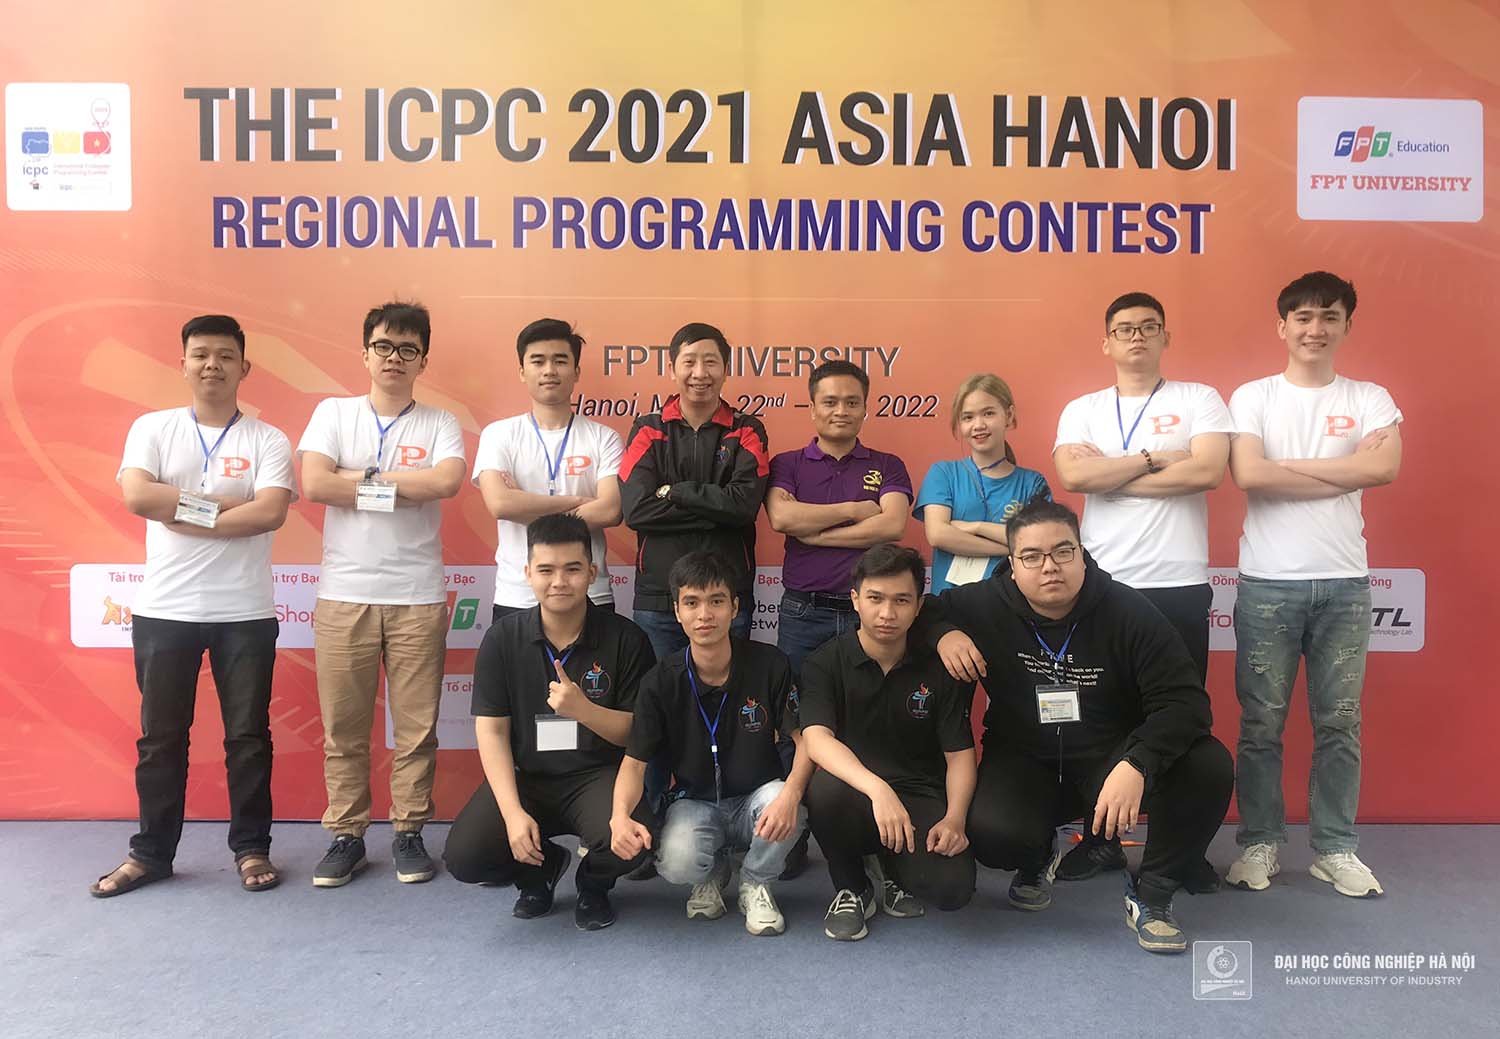 Kỳ thi Olympic Tin học sinh viên Việt Nam lần thứ 30 và kỳ thi lập trình sinh viên quốc tế ICPC Asia Hanoi